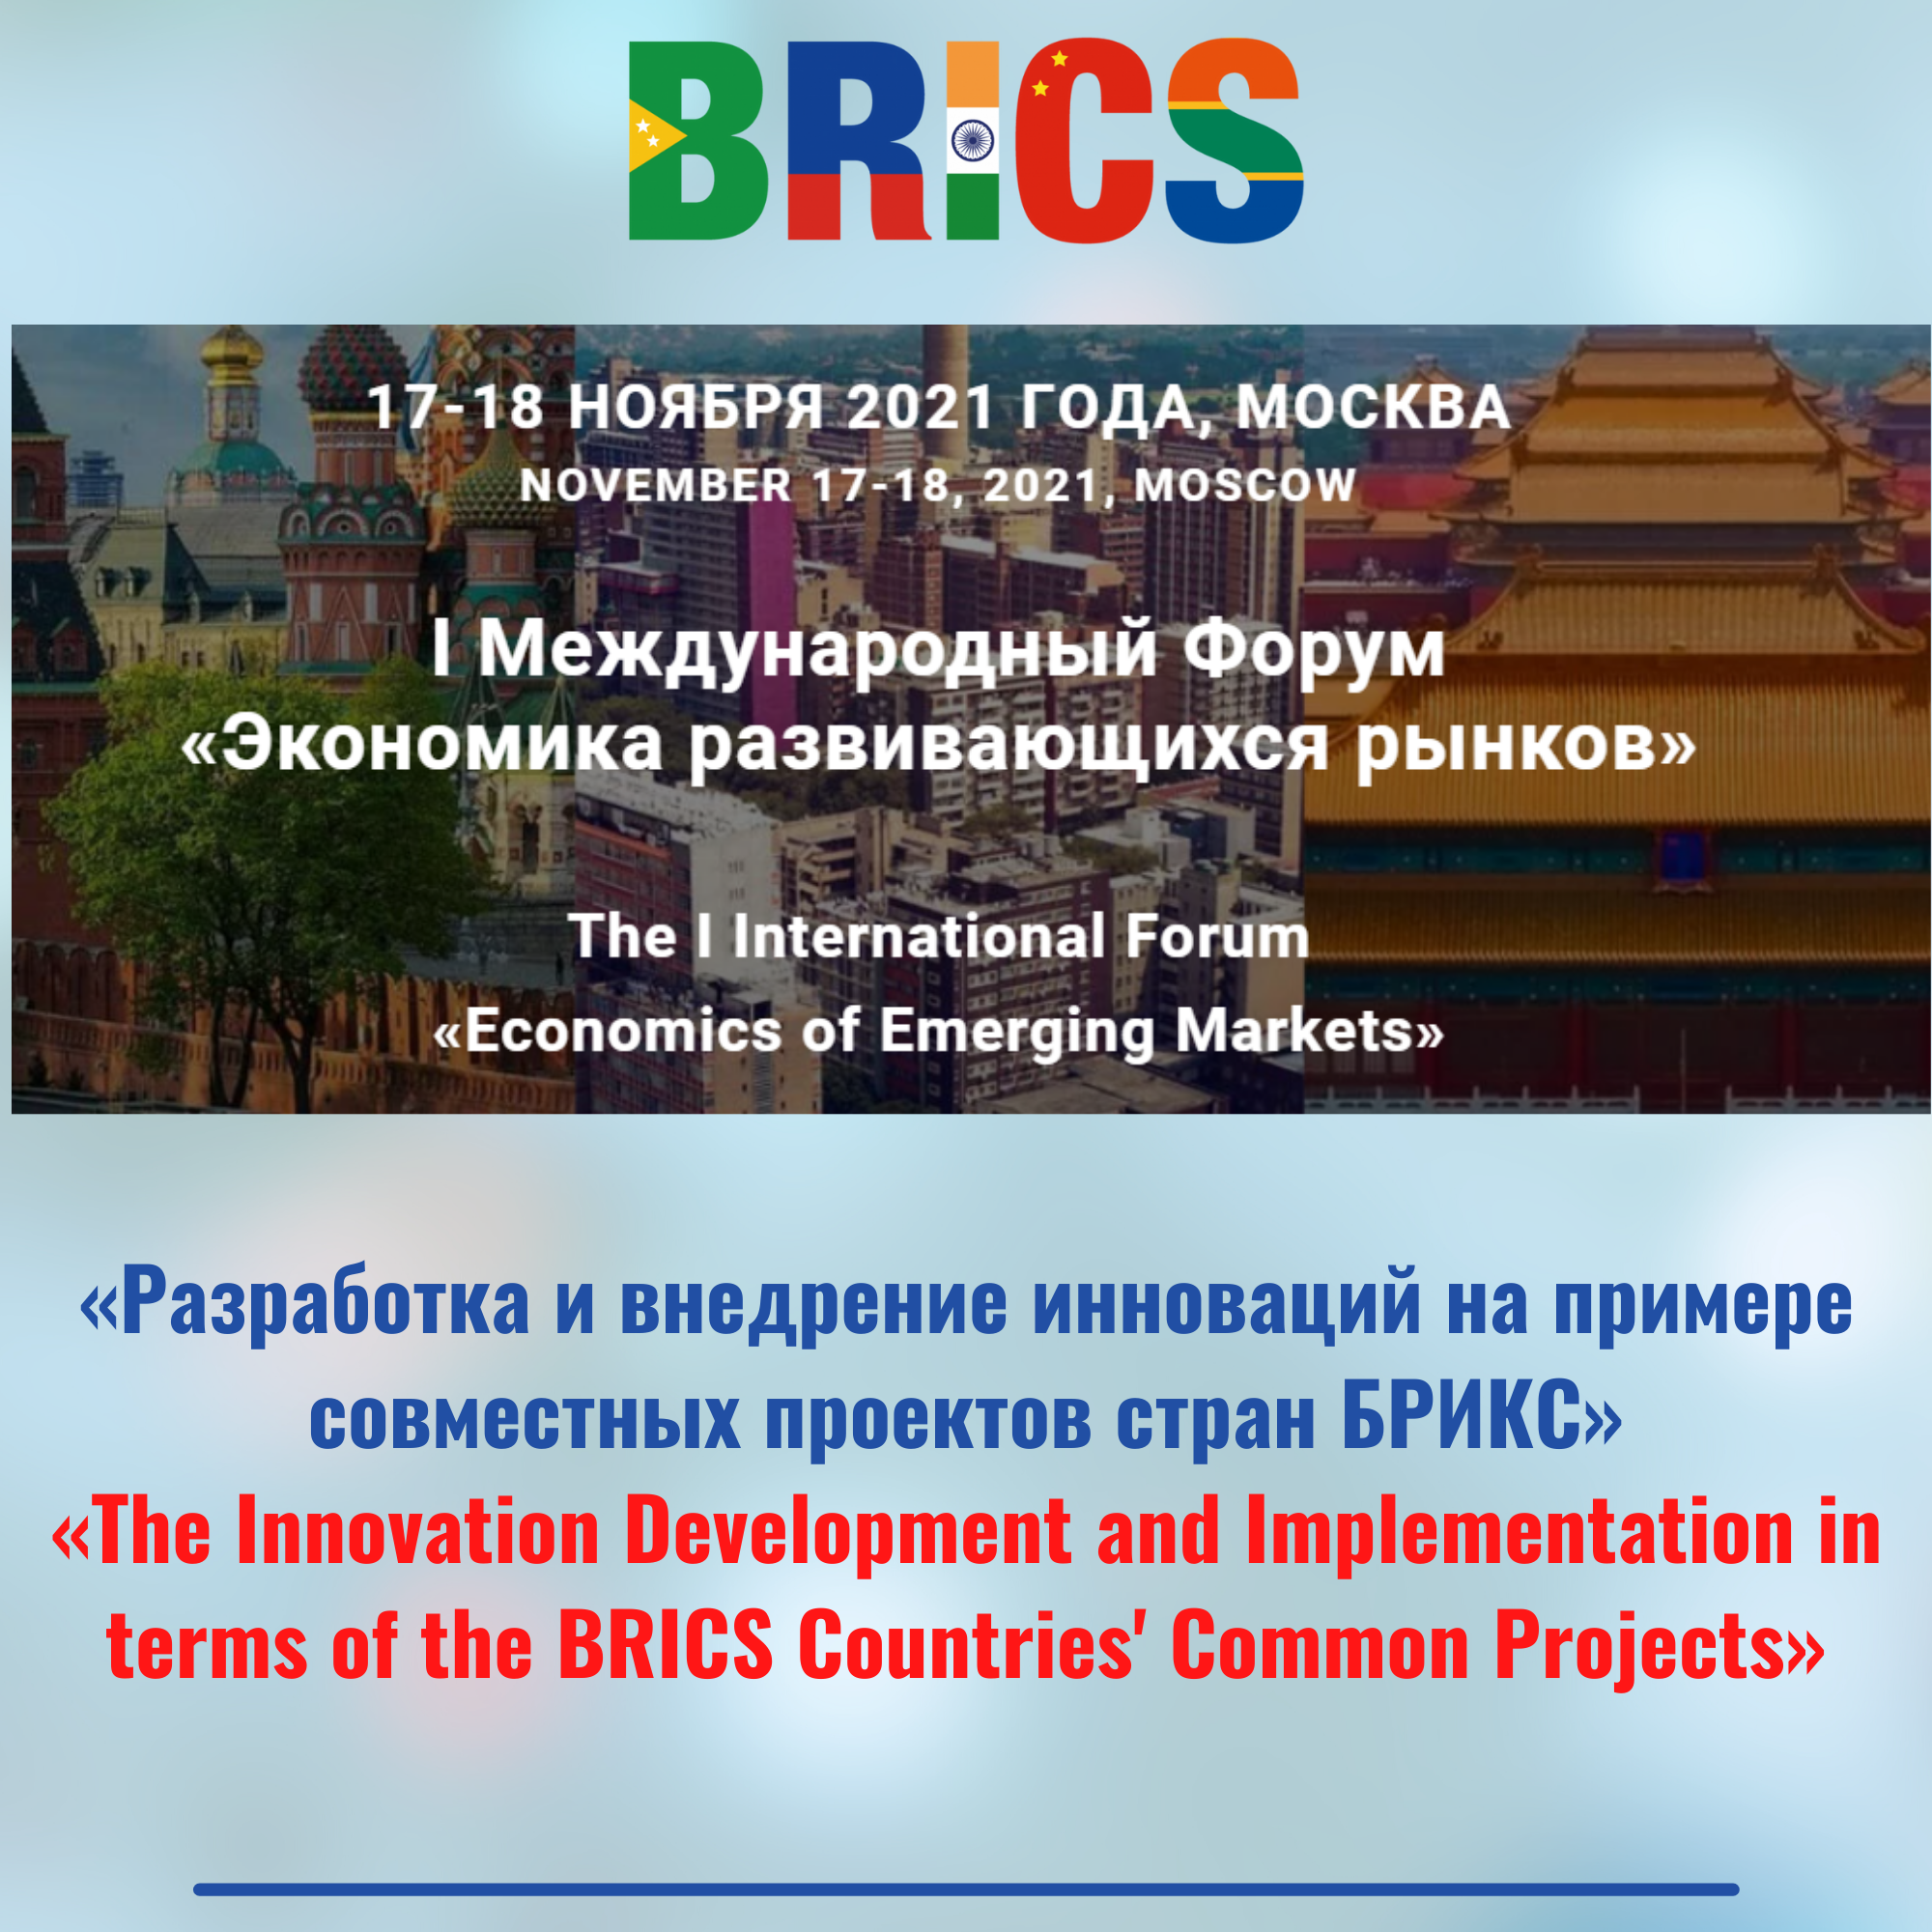 I Международный Форум «Экономика развивающихся рынков» «Разработка и внедрение инноваций на примере совместных проектов стран БРИКС» 